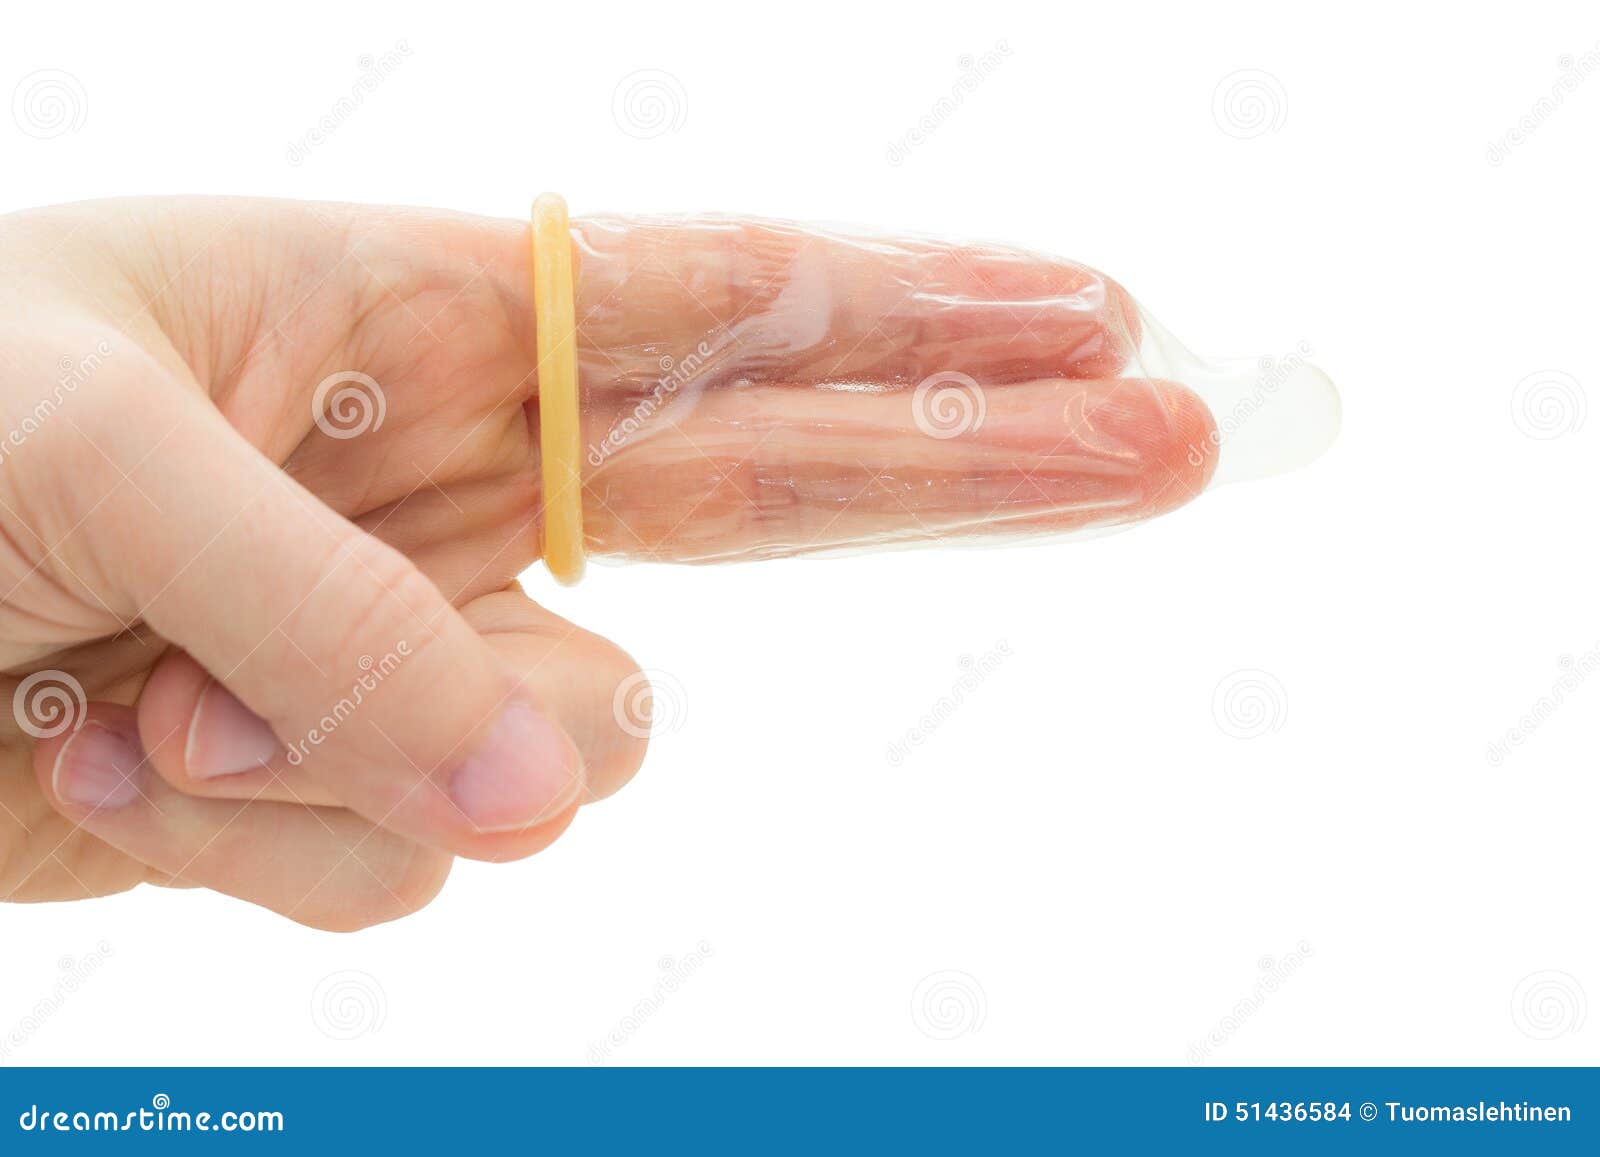 можно ли использовать презерватив при мастурбации фото 114